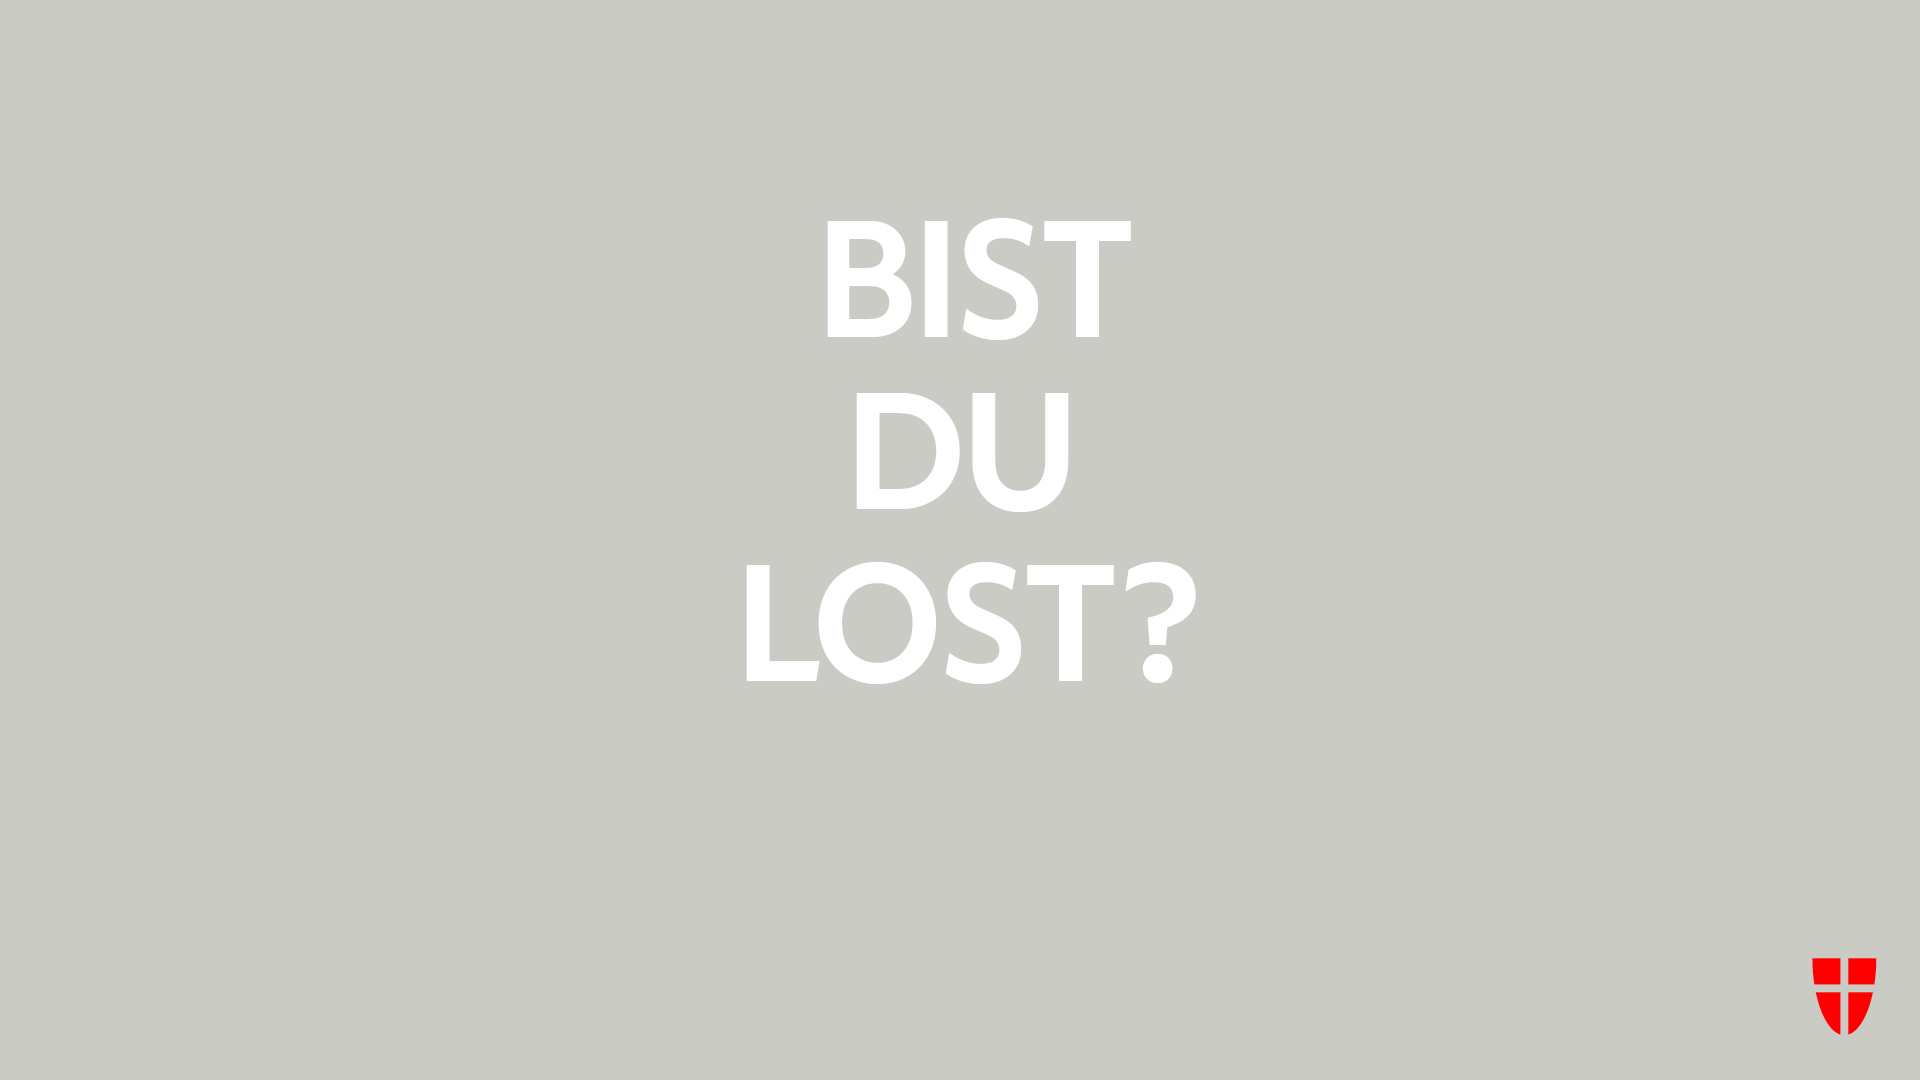 NINA NACHBAUR– STADT WIEN – Idee der Kampagne ›Bist du Lost?‹